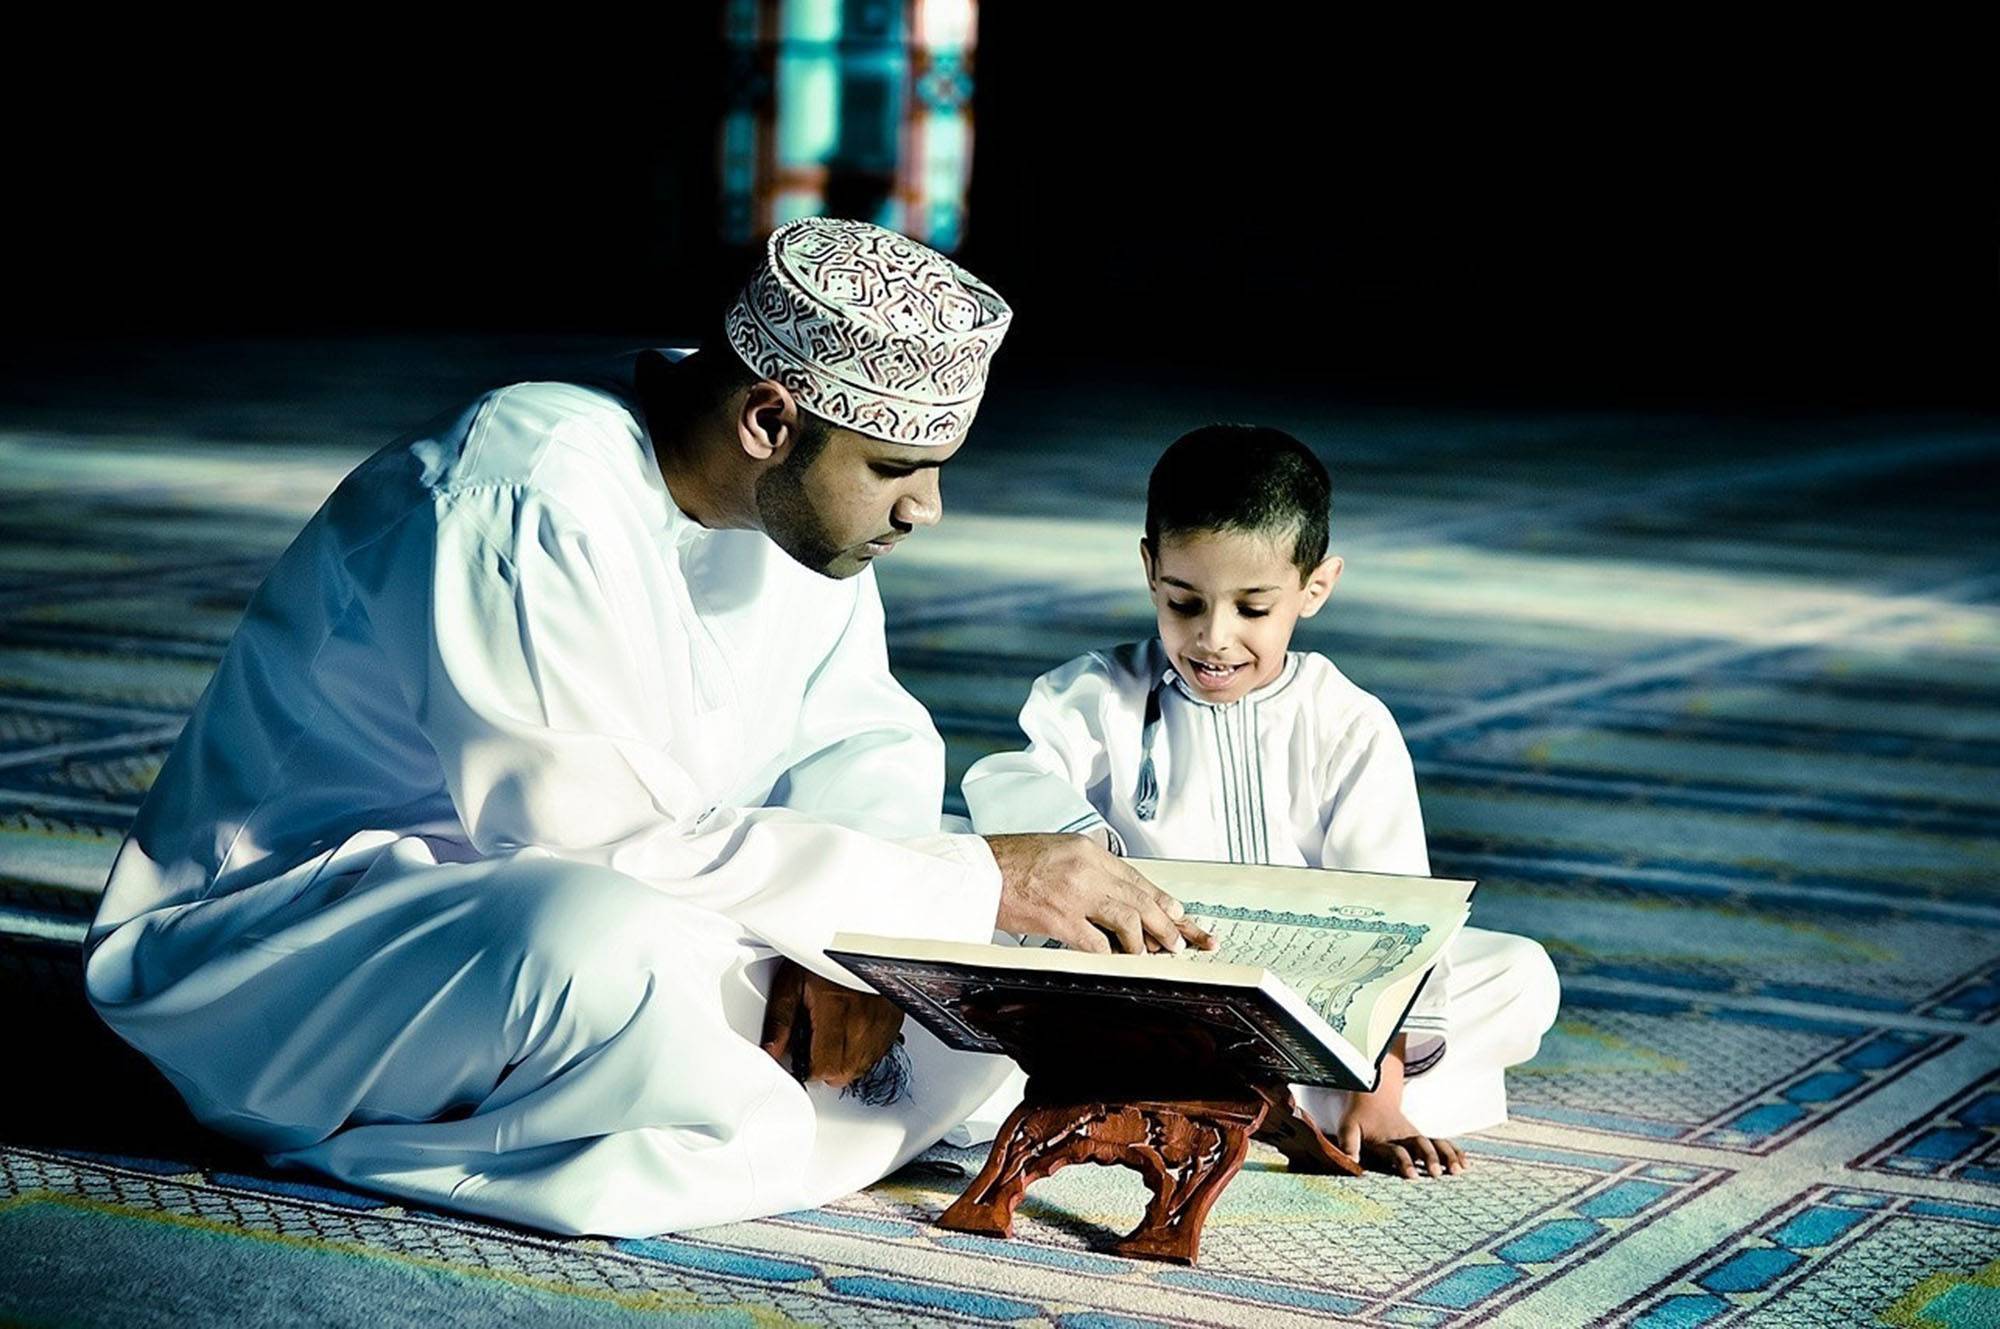 Muslim uz. Мусульманские дети. Мусульманин с Кораном. Арабские дети.